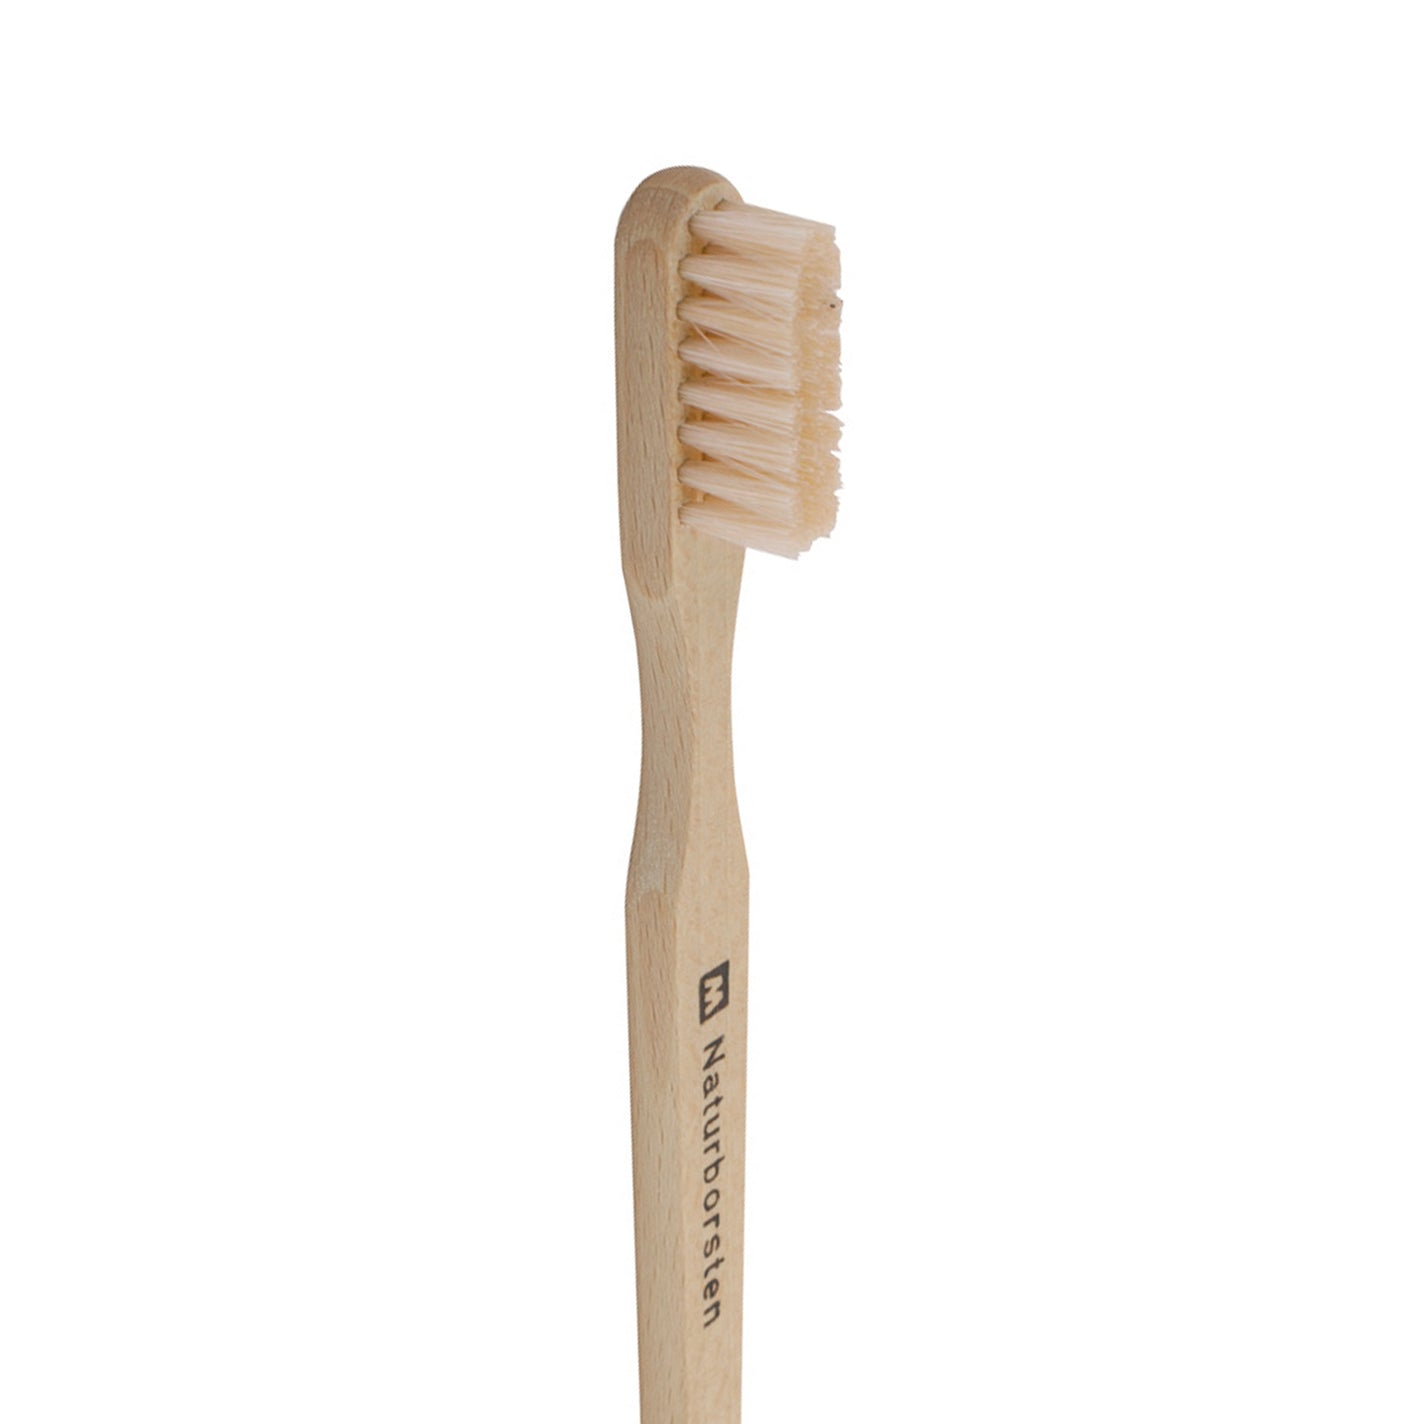 Redecker Beech Wood Toothbrush -16.5cm